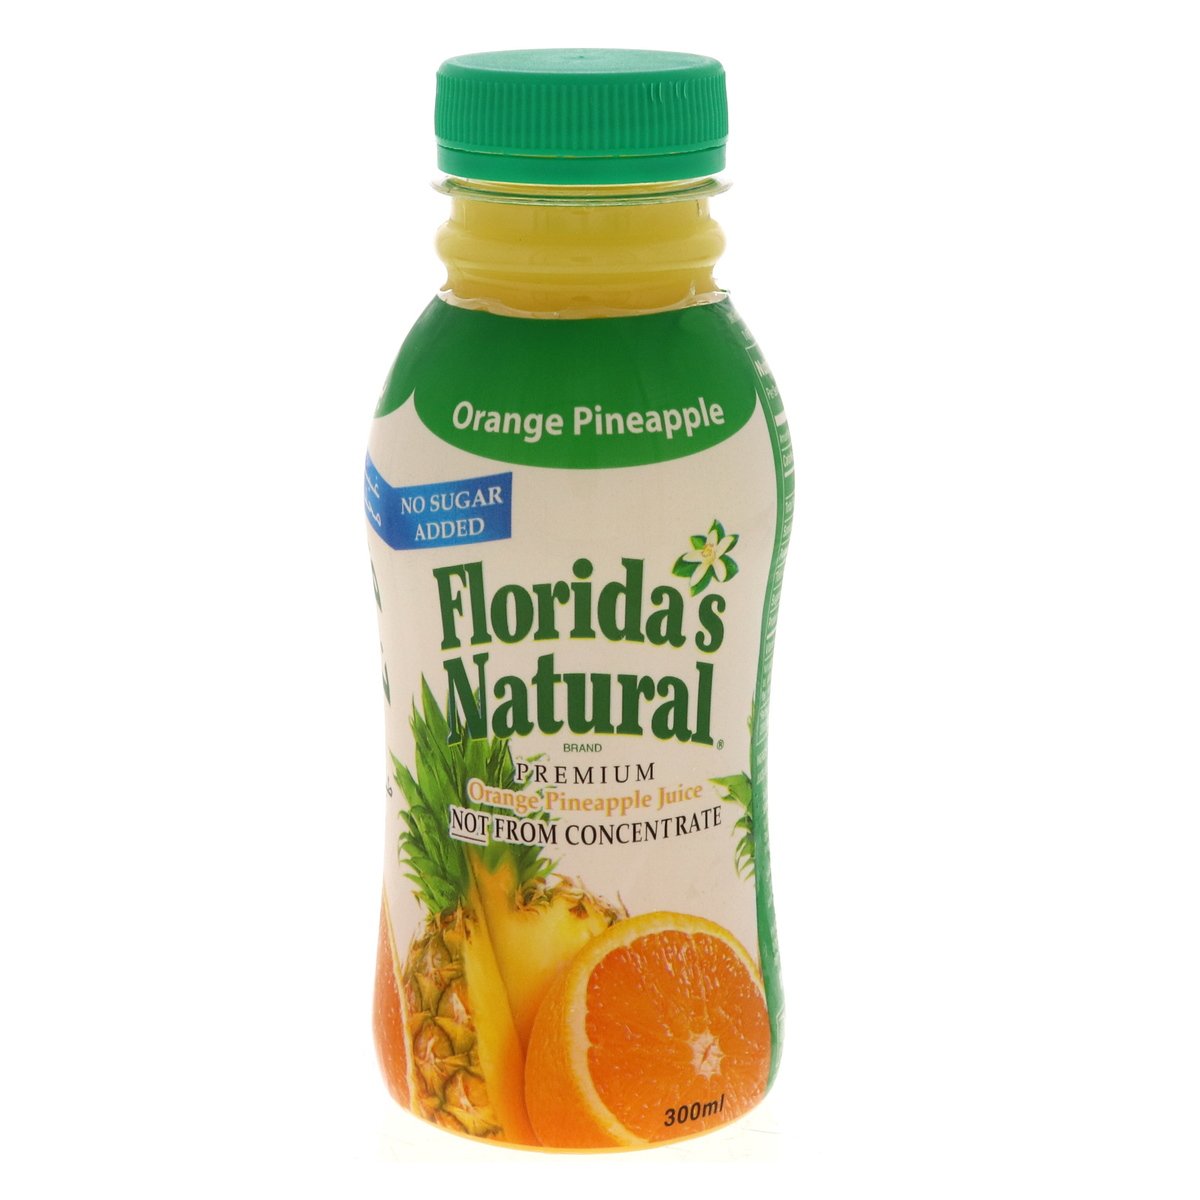 Florida's Natural Premium Orange Pineapple Juice 300 ml